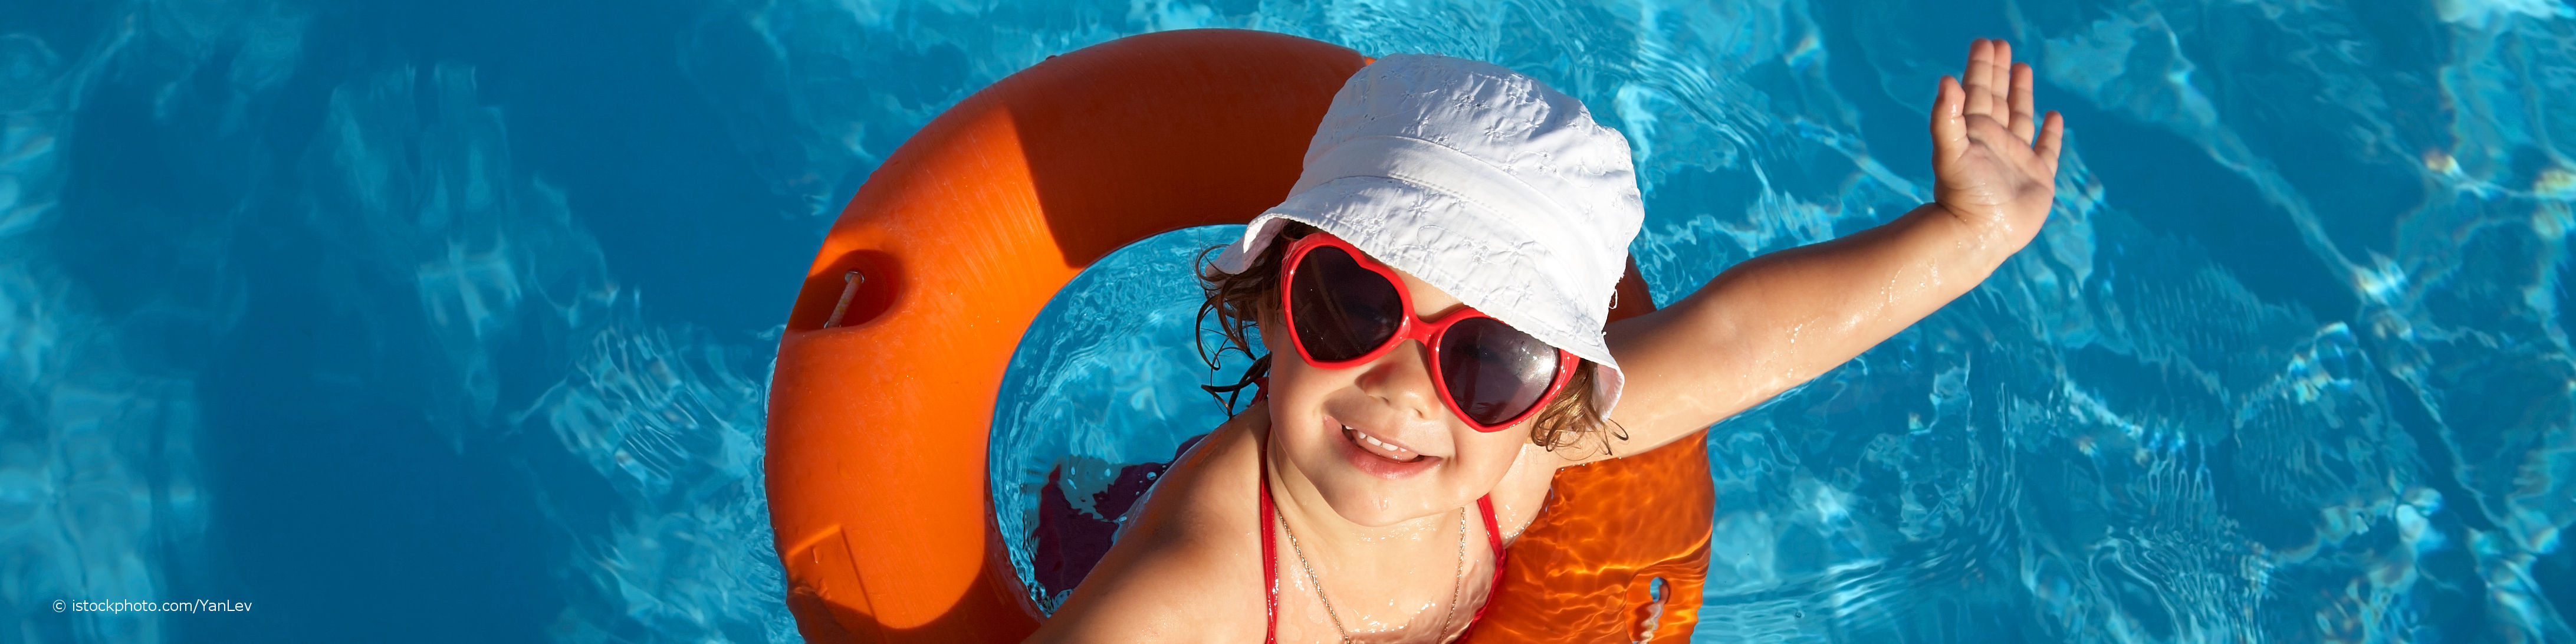 Kind trägt eine Sonnenbrille mit UV-Schutz, einen Hut und einen Schwimmreifen und winkt aus dem Wasser im Schwimmbad